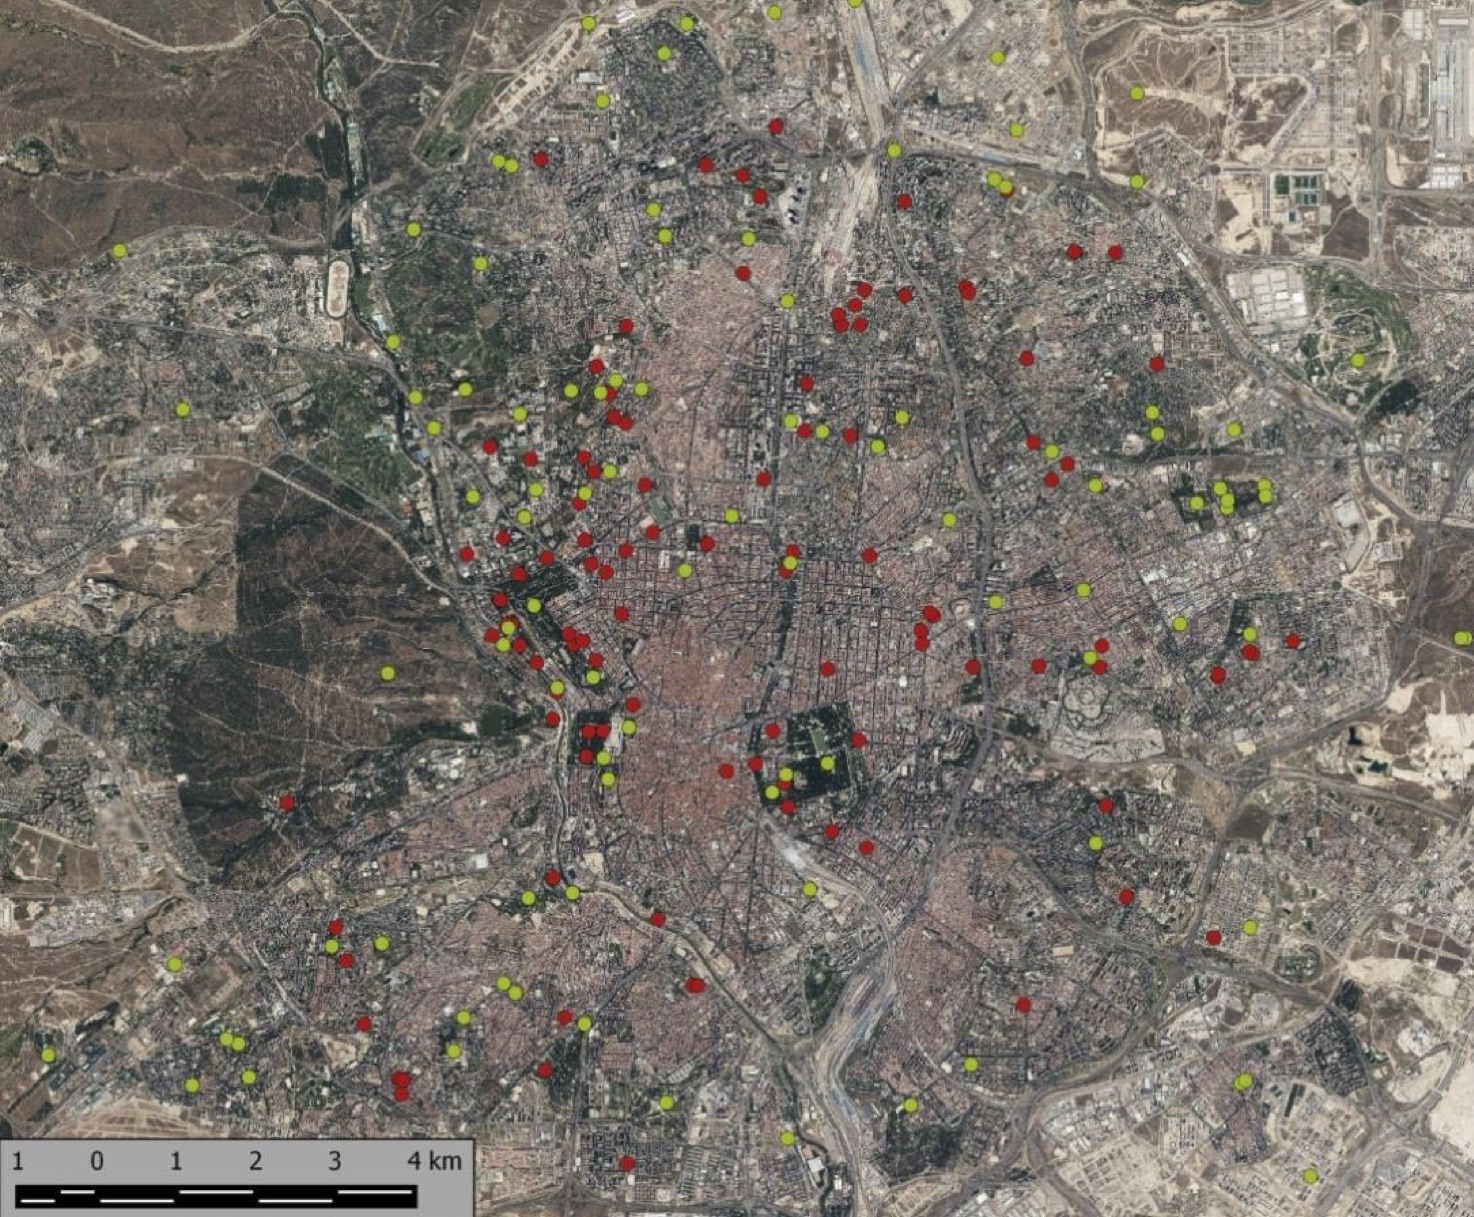 <span style="font-size: 10pt;">Visualización espacial del total de autillos ingresados en el Centro de Recuperación de Brinzal desde 1997 a 2015 en la ciudad de Madrid. En rojo se representan los pollos infectados y en verde los que no presentaron síntomas de la enfermedad. Fuente: Hernández, 2016.</span>